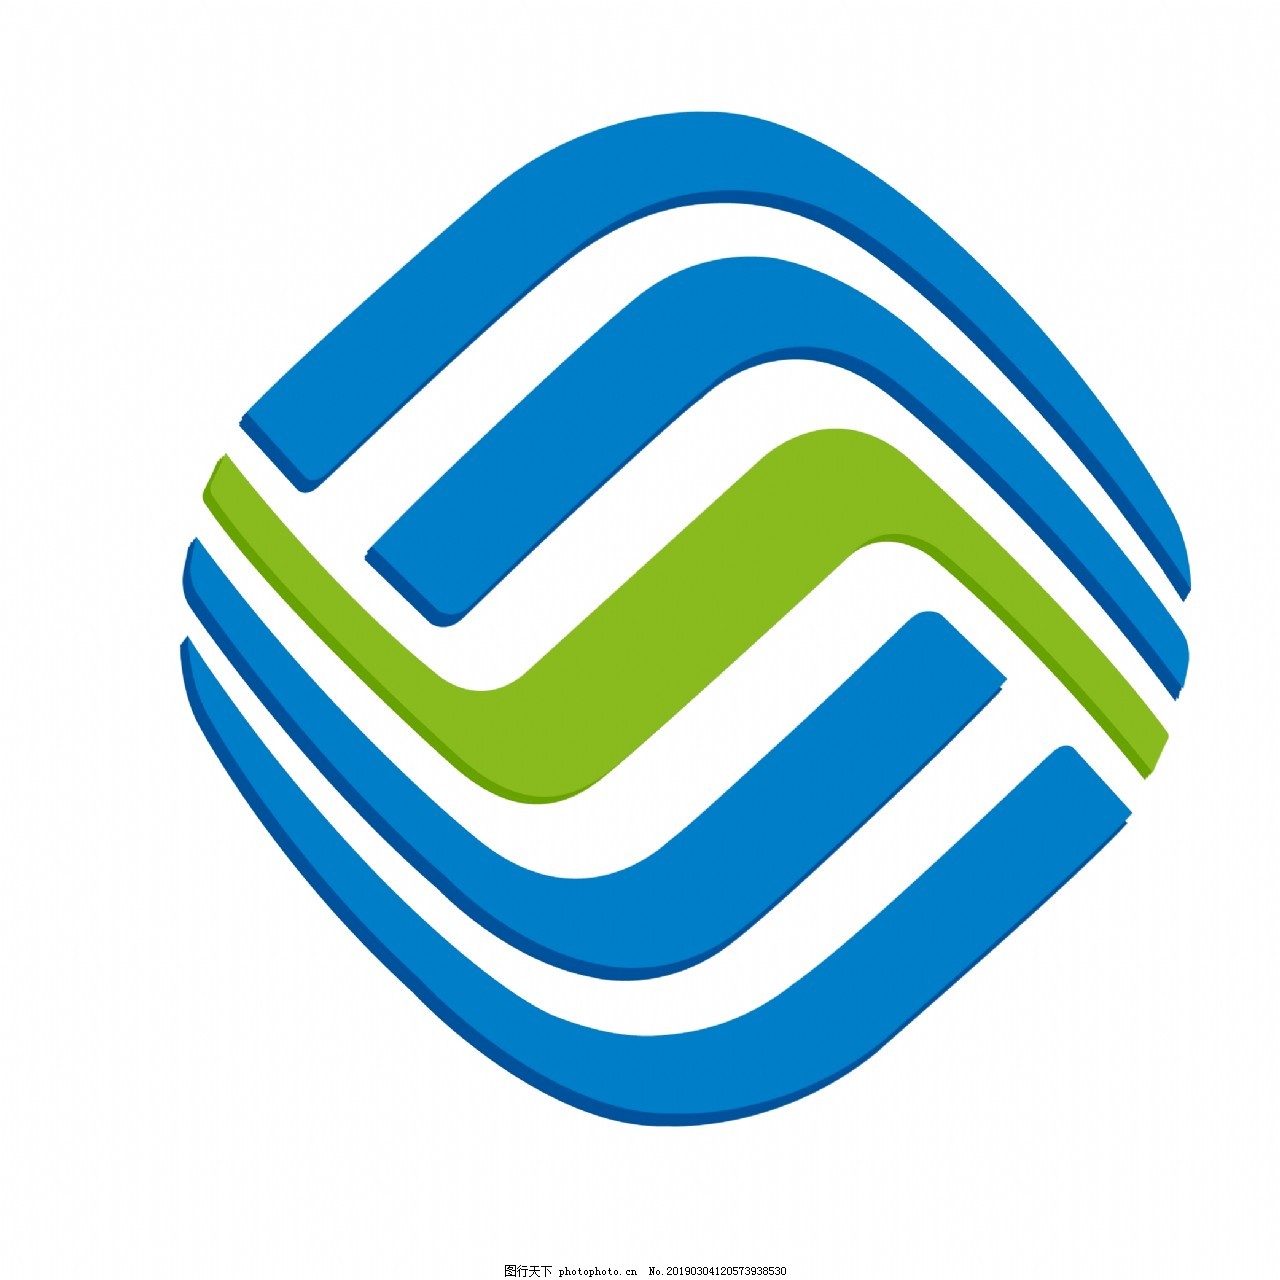 蓝色中国移动logo图片素材免费下载 - 觅知网